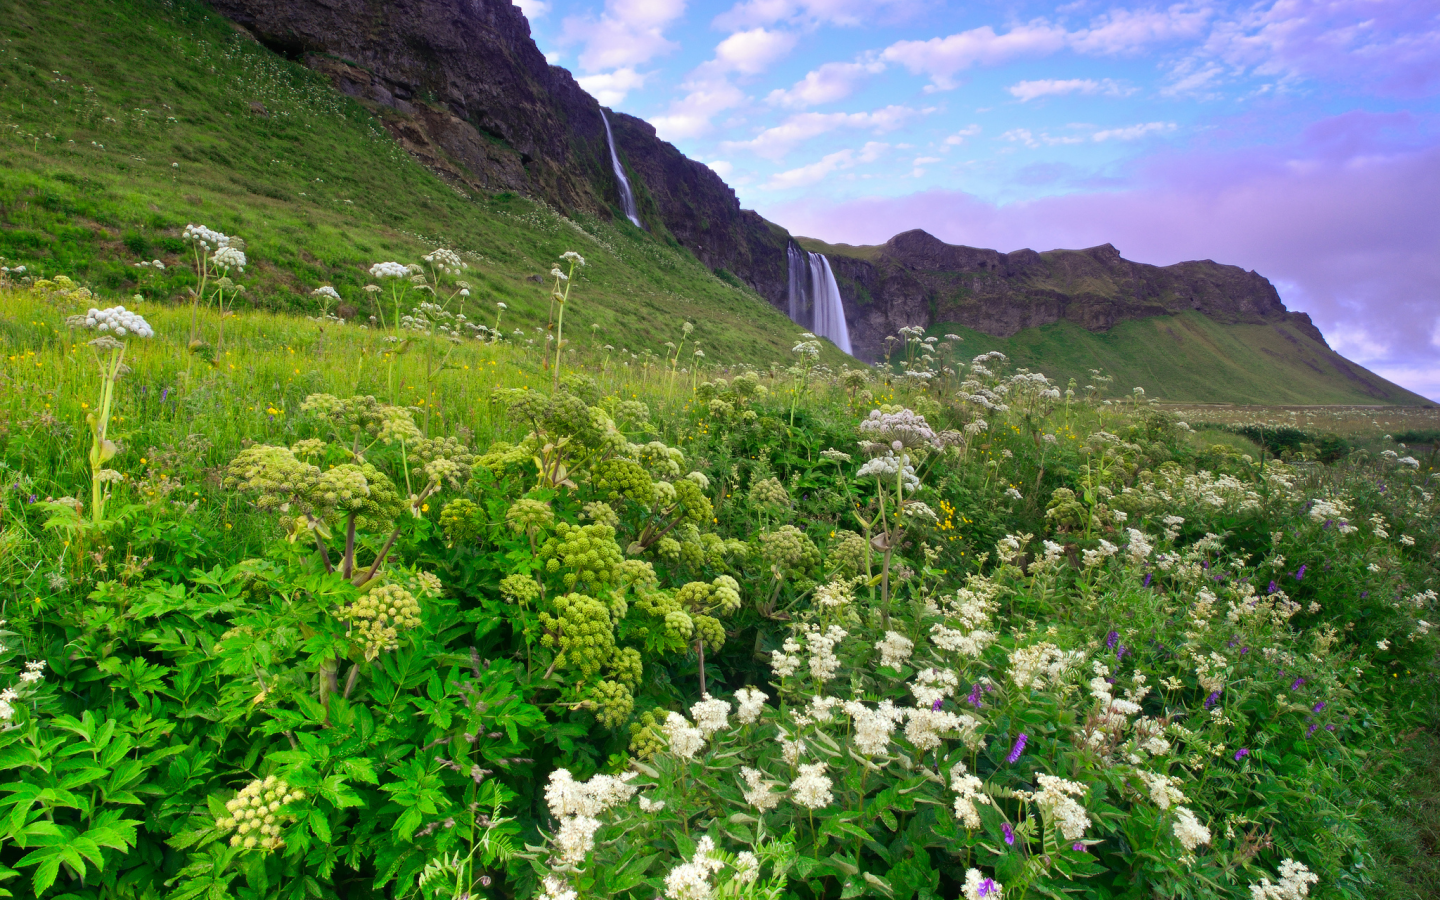 зелень, утро, трава, Исландия, цветы, холмы, горы